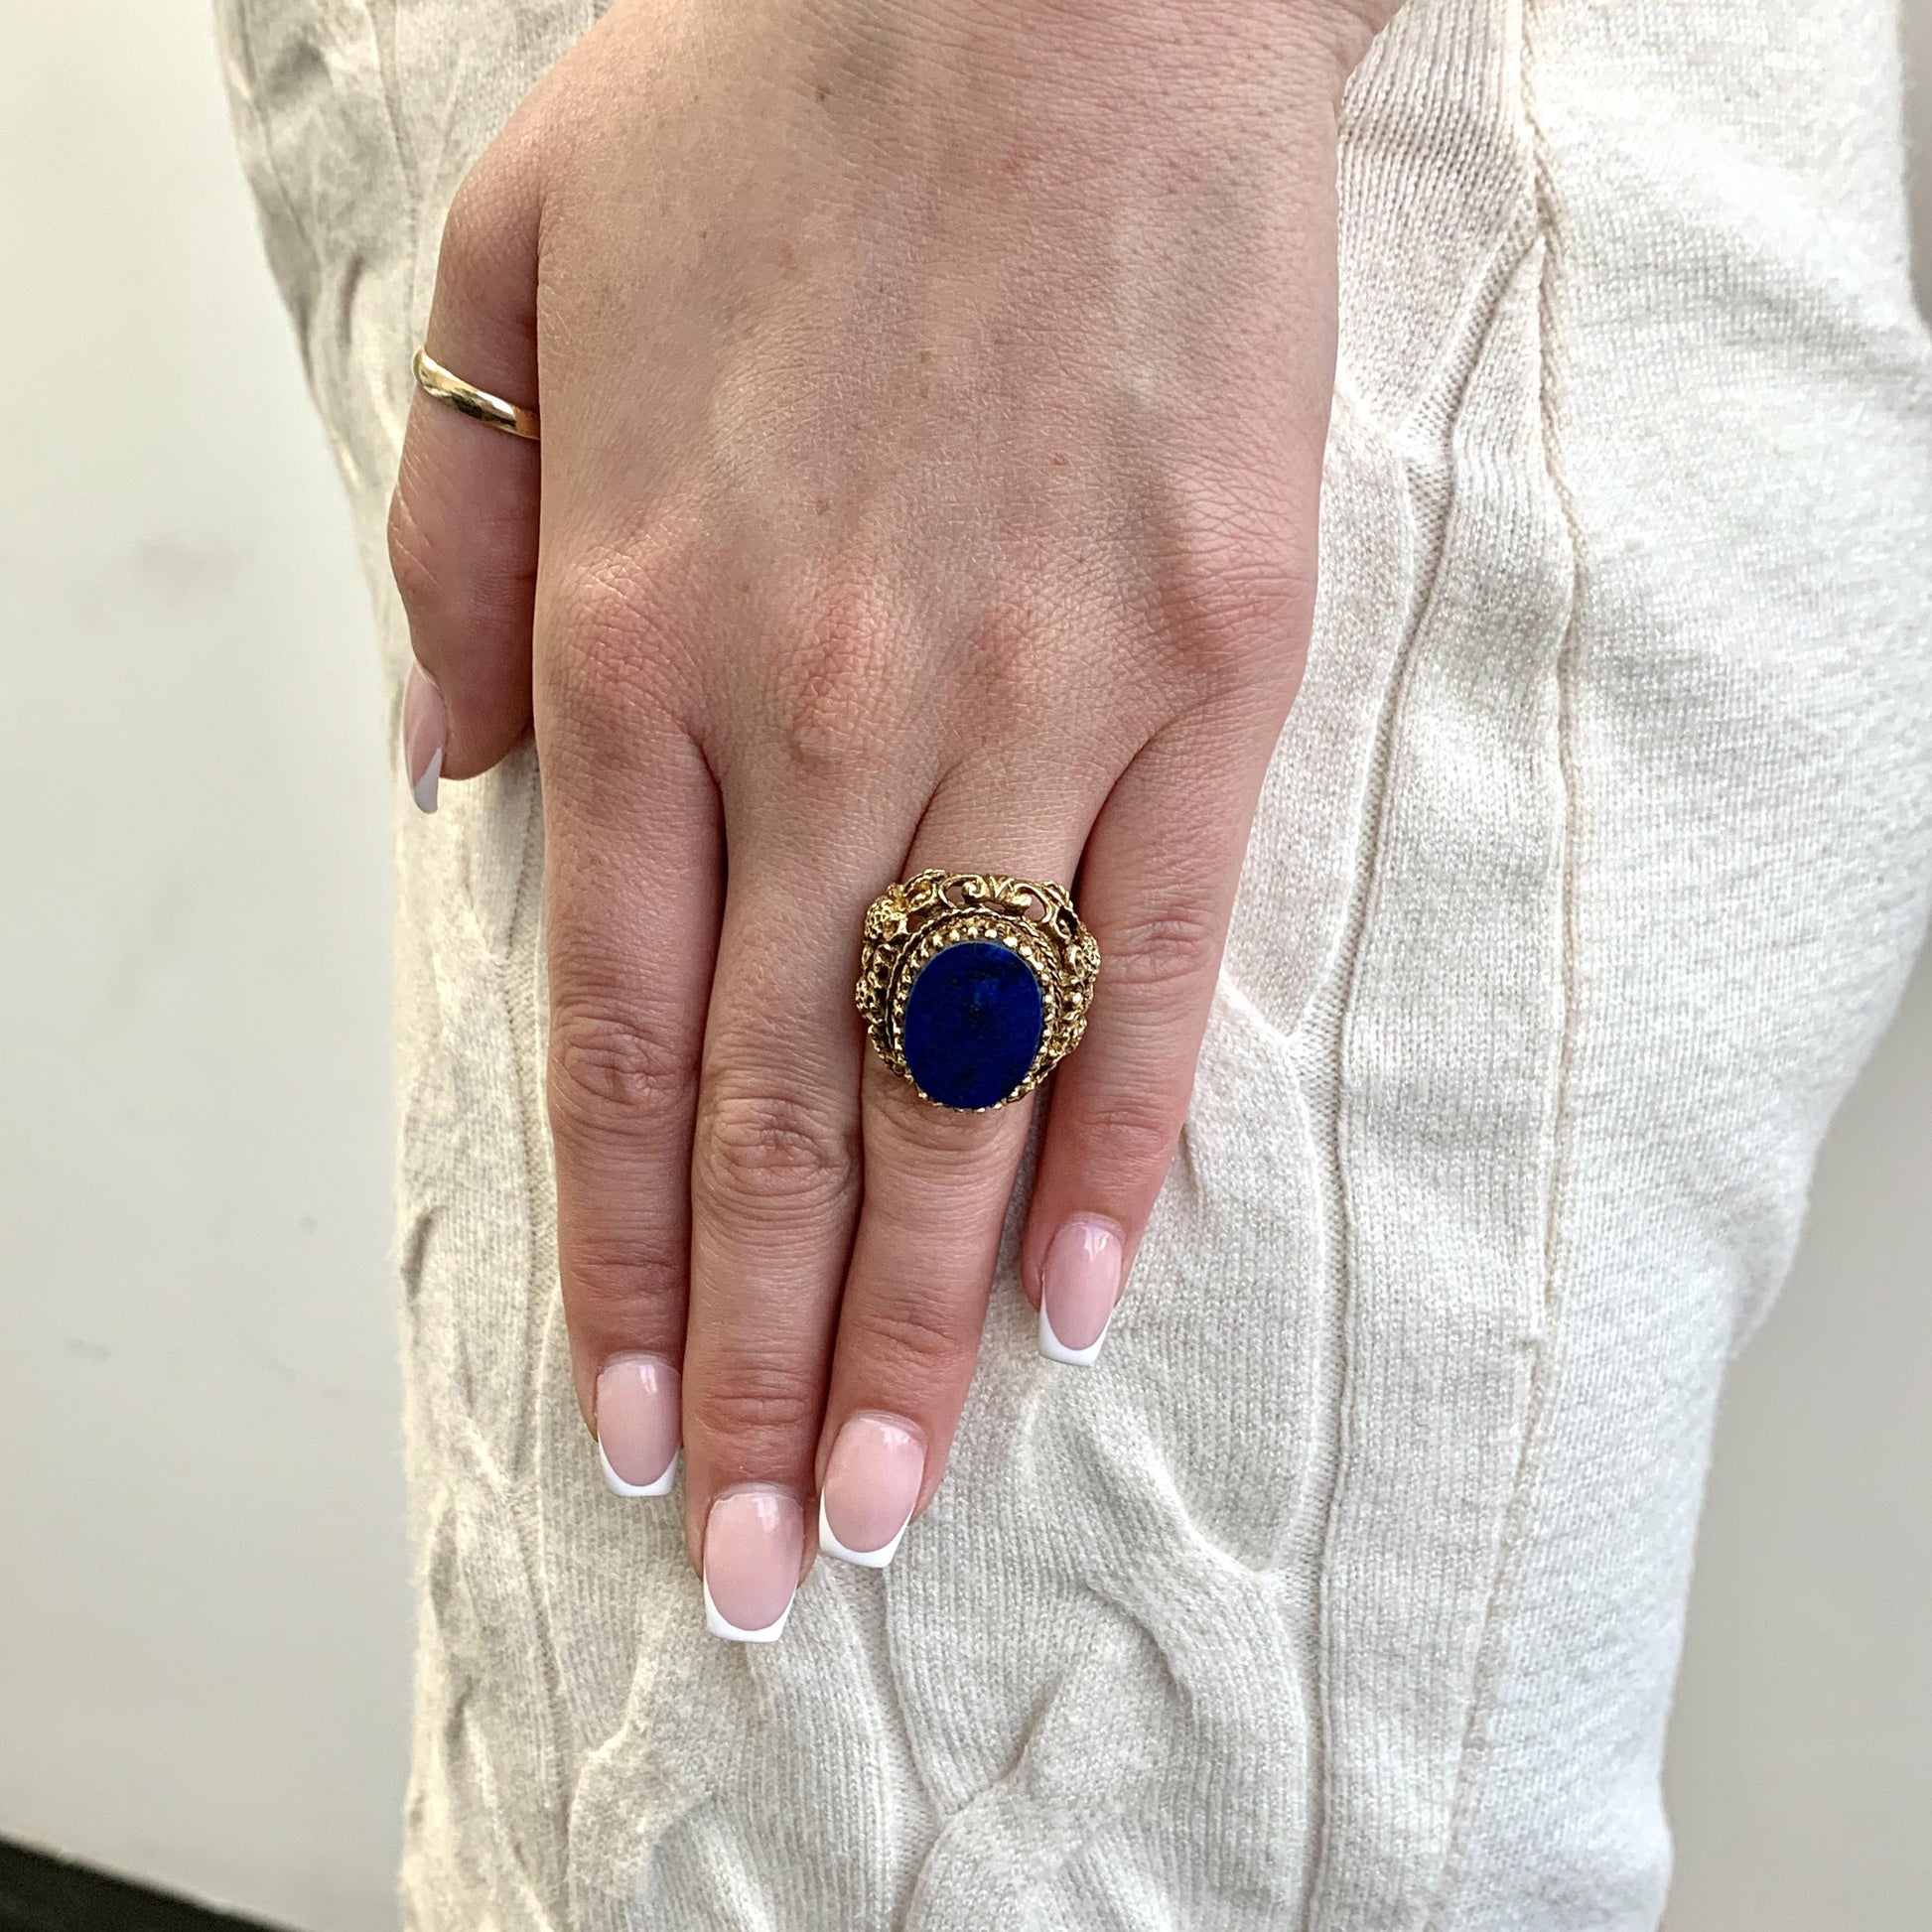 14K Yellow Gold Lapis Lazuli Ring 6.75 US